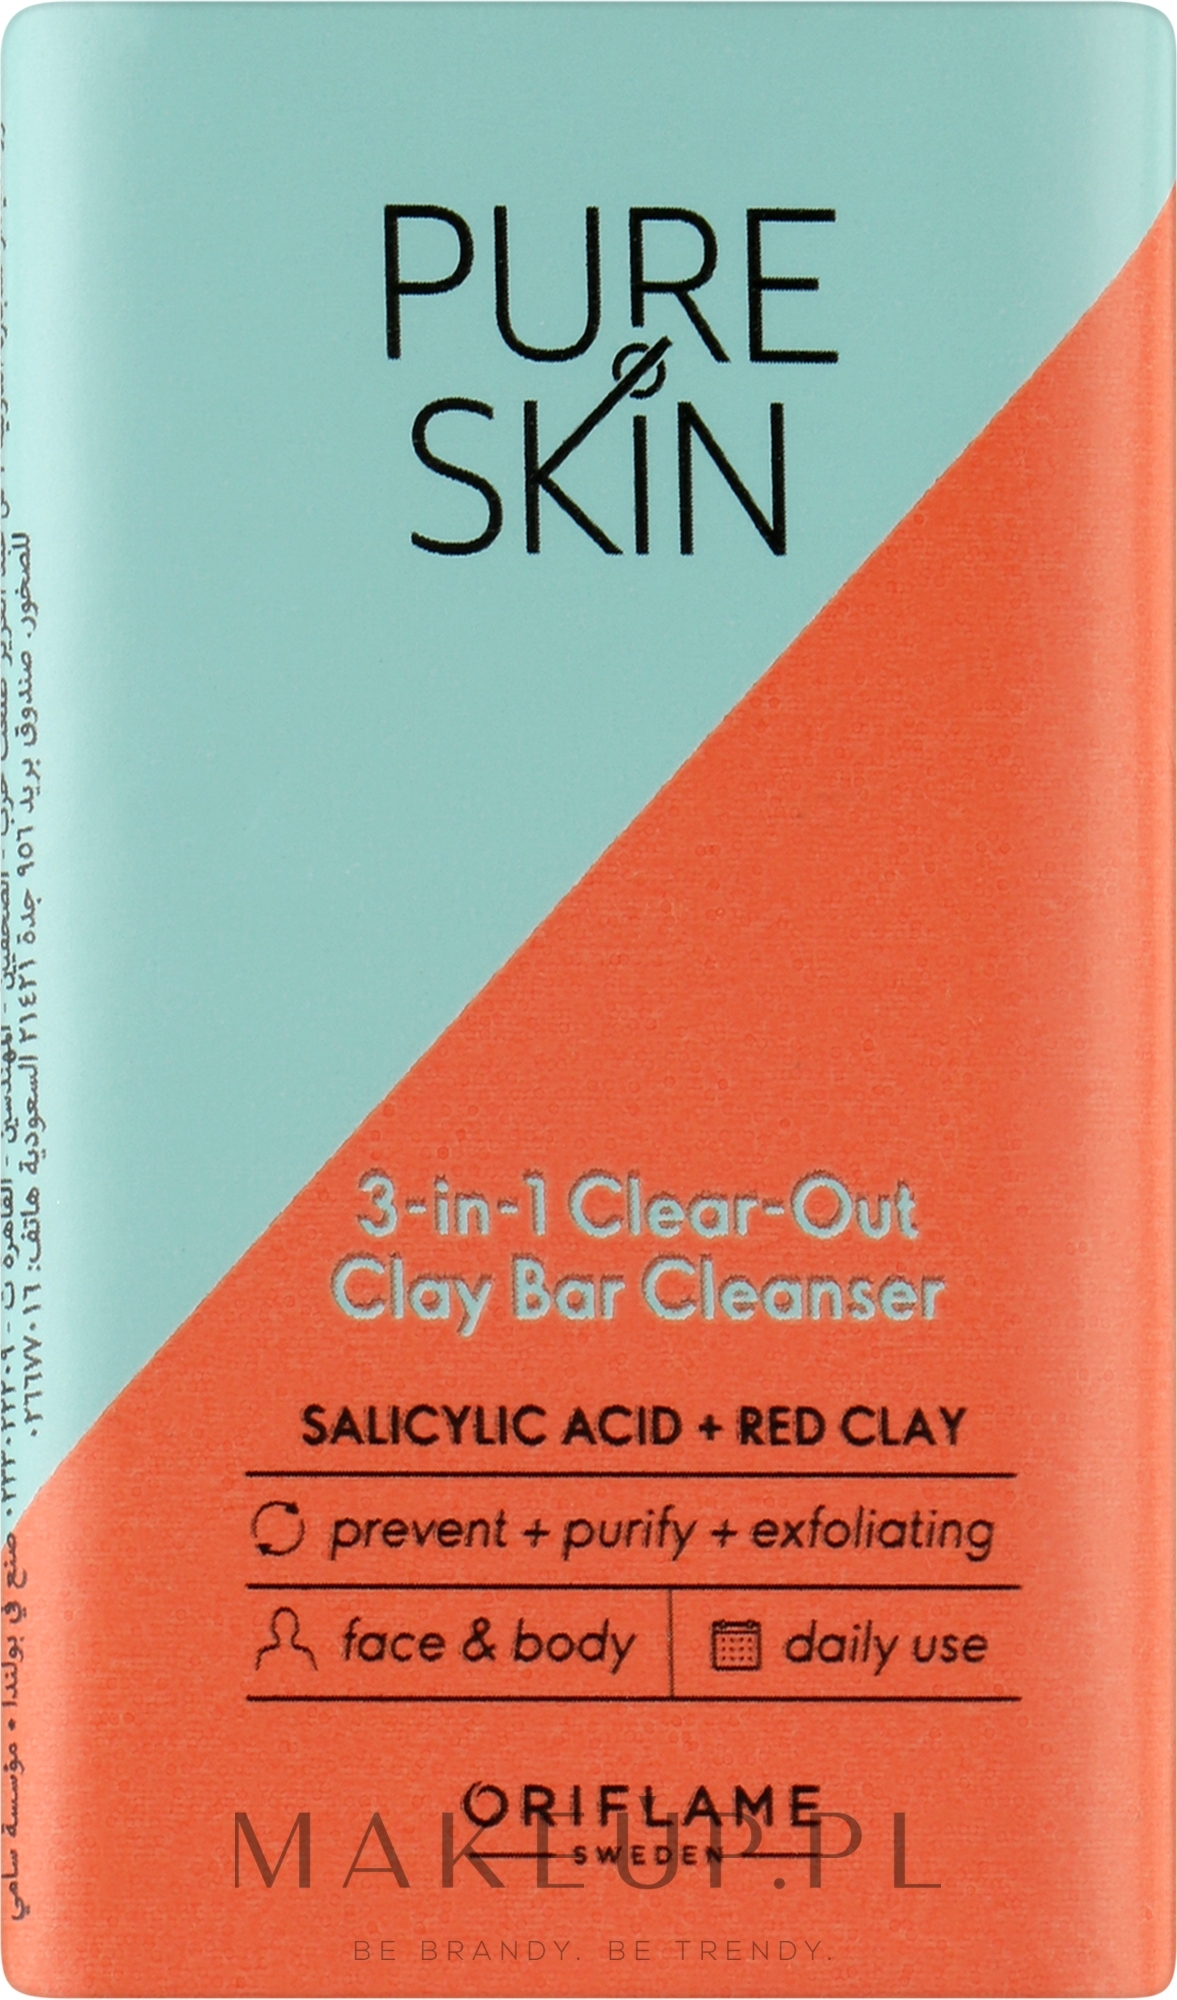 Mydło do twarzy i ciała - Oriflame Pure Skin 3 In 1 Clear Out Clay Bar Cleanser — Zdjęcie 75 g